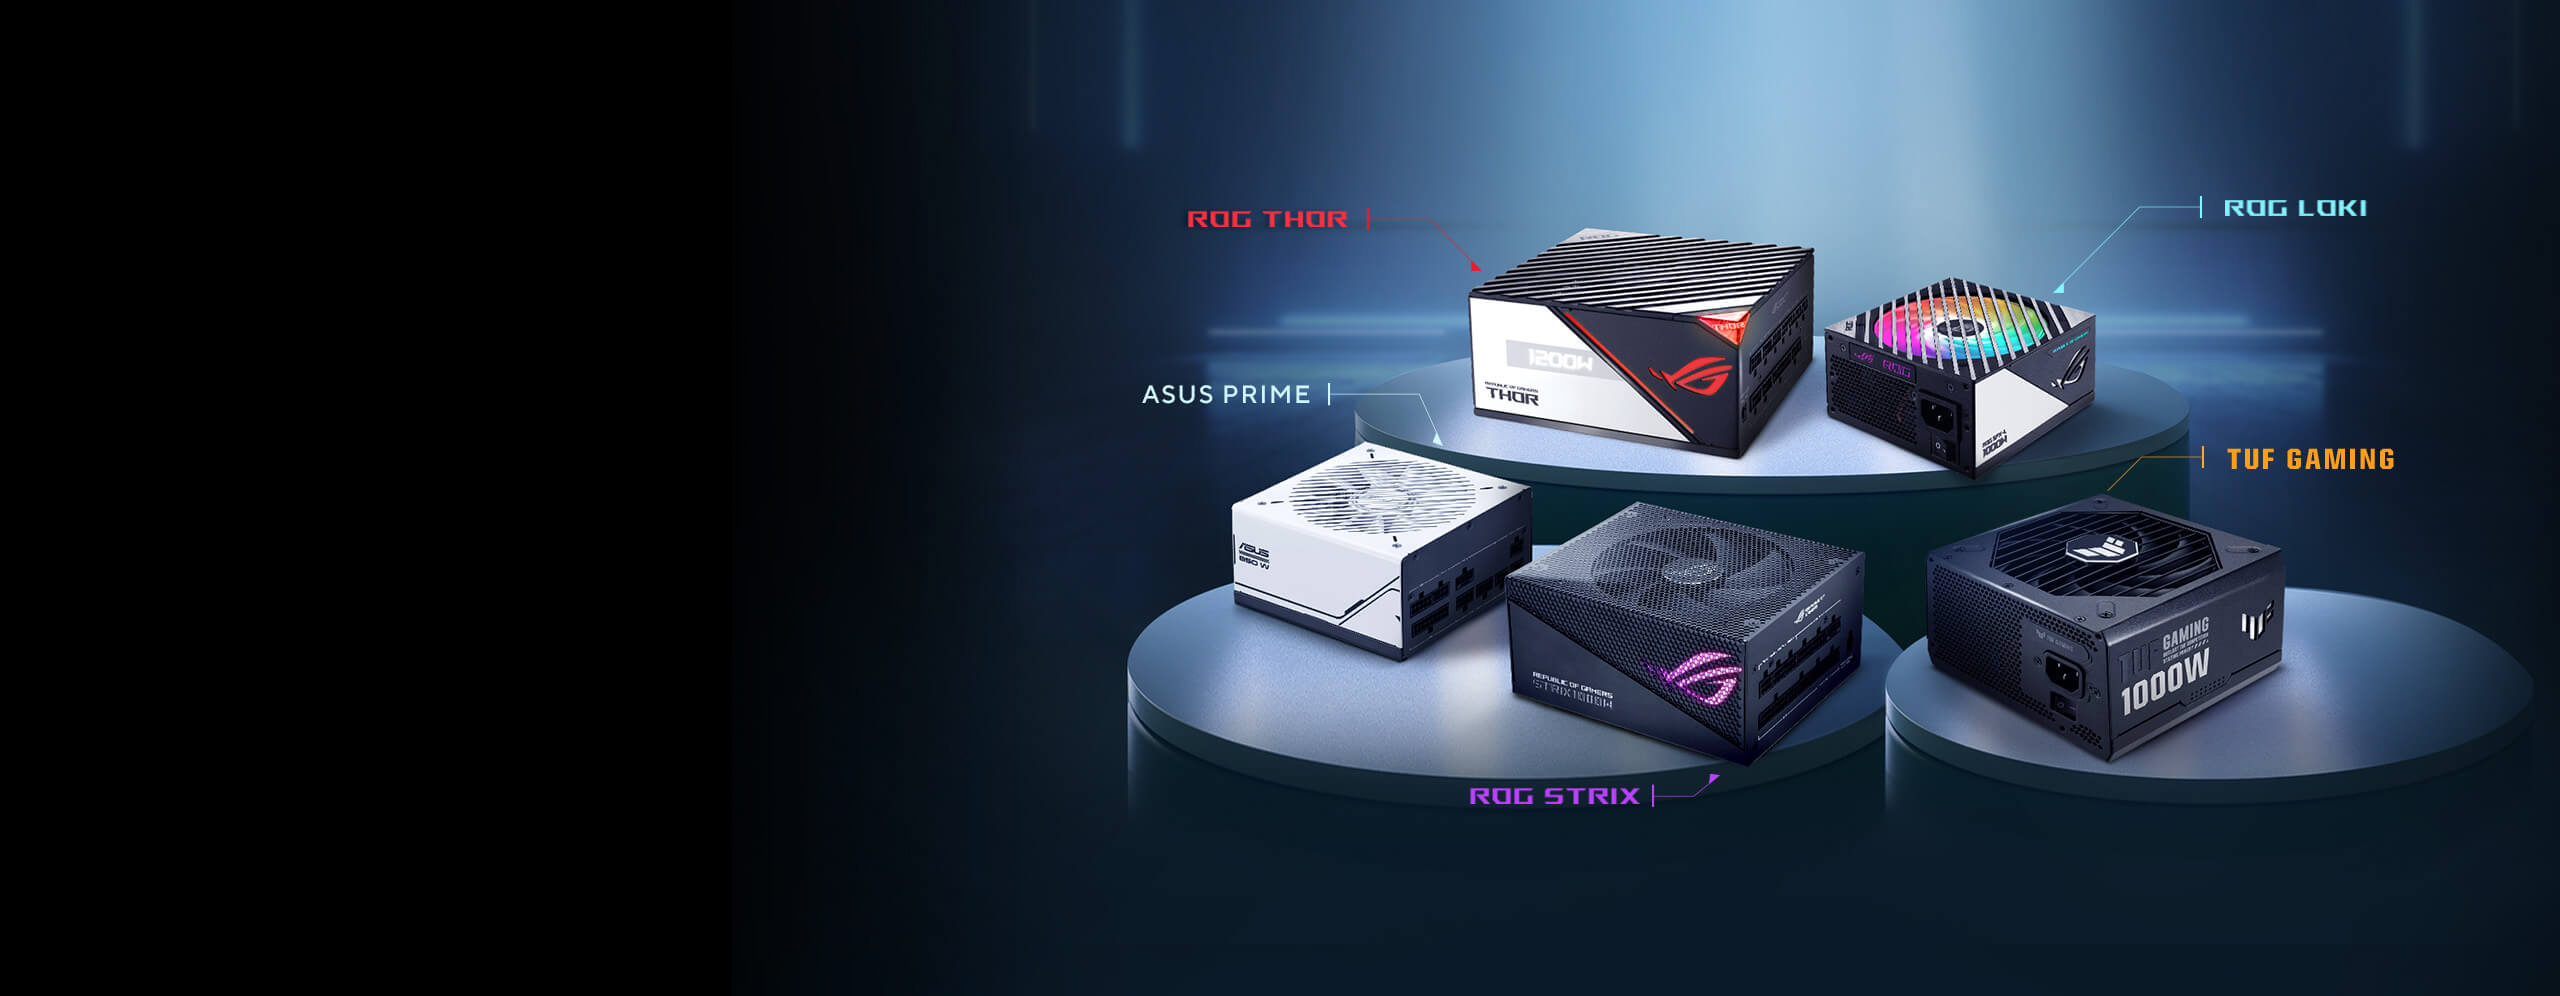 Aanbevolen voedingen voor de AMD Radeon™ RX 7900 XT videokaart